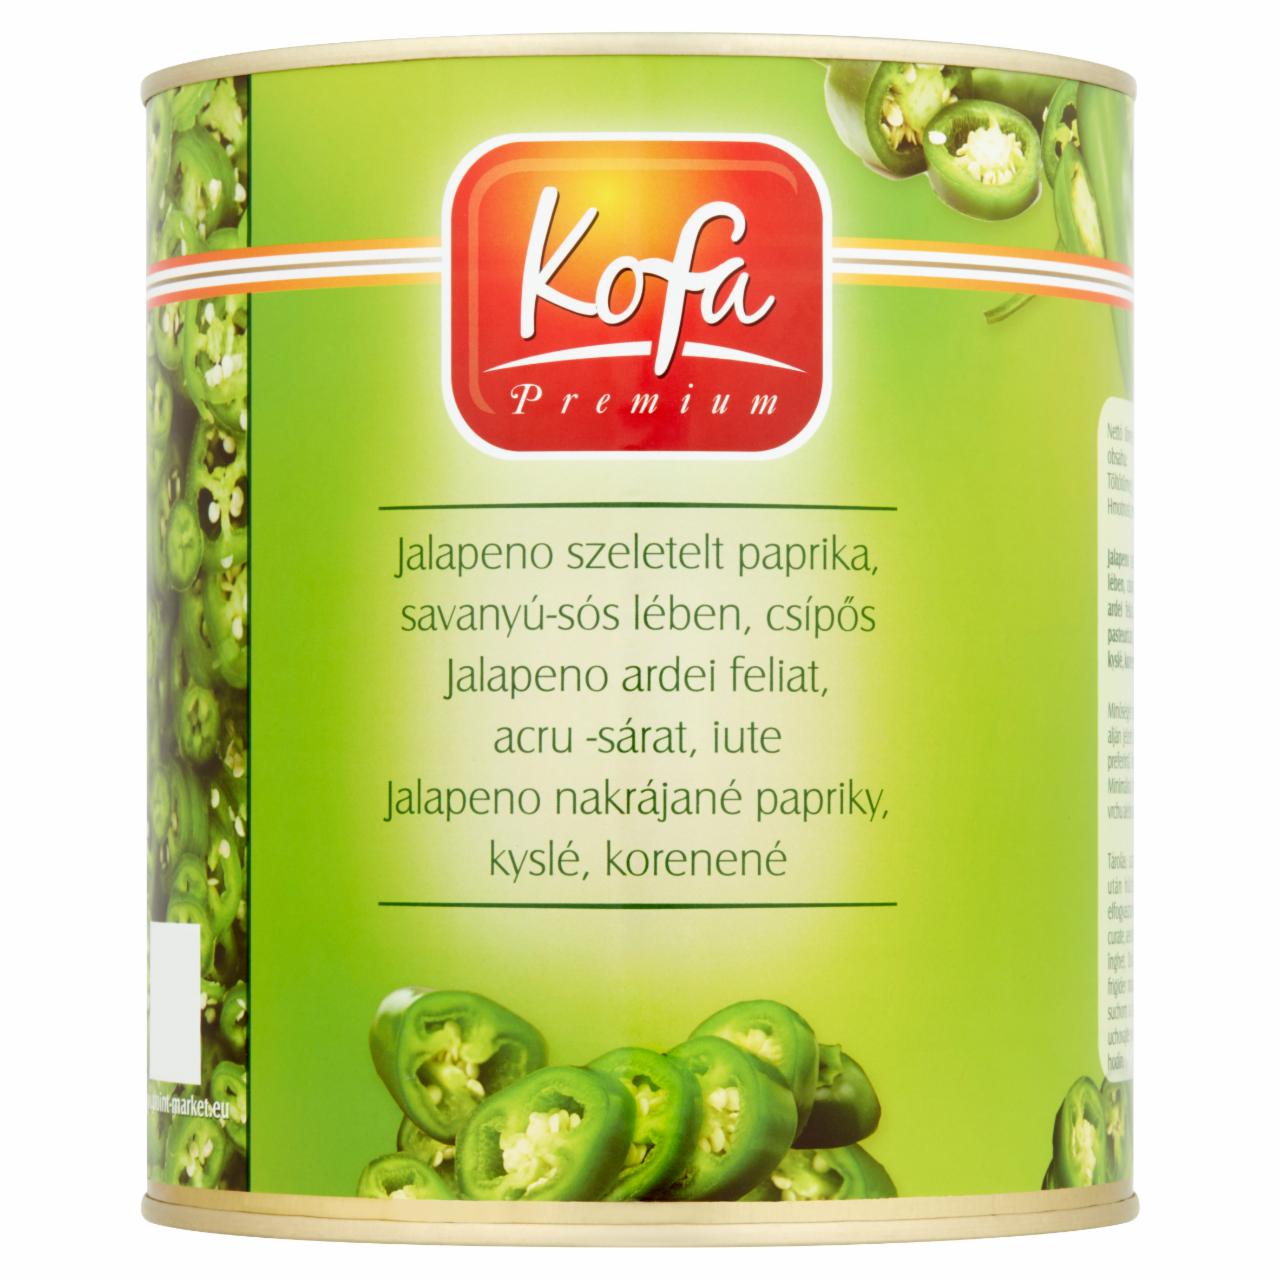 Képek - Kofa Premium csípős, szeletelt Jalapeno paprika savanyú-sós lében 2900 g